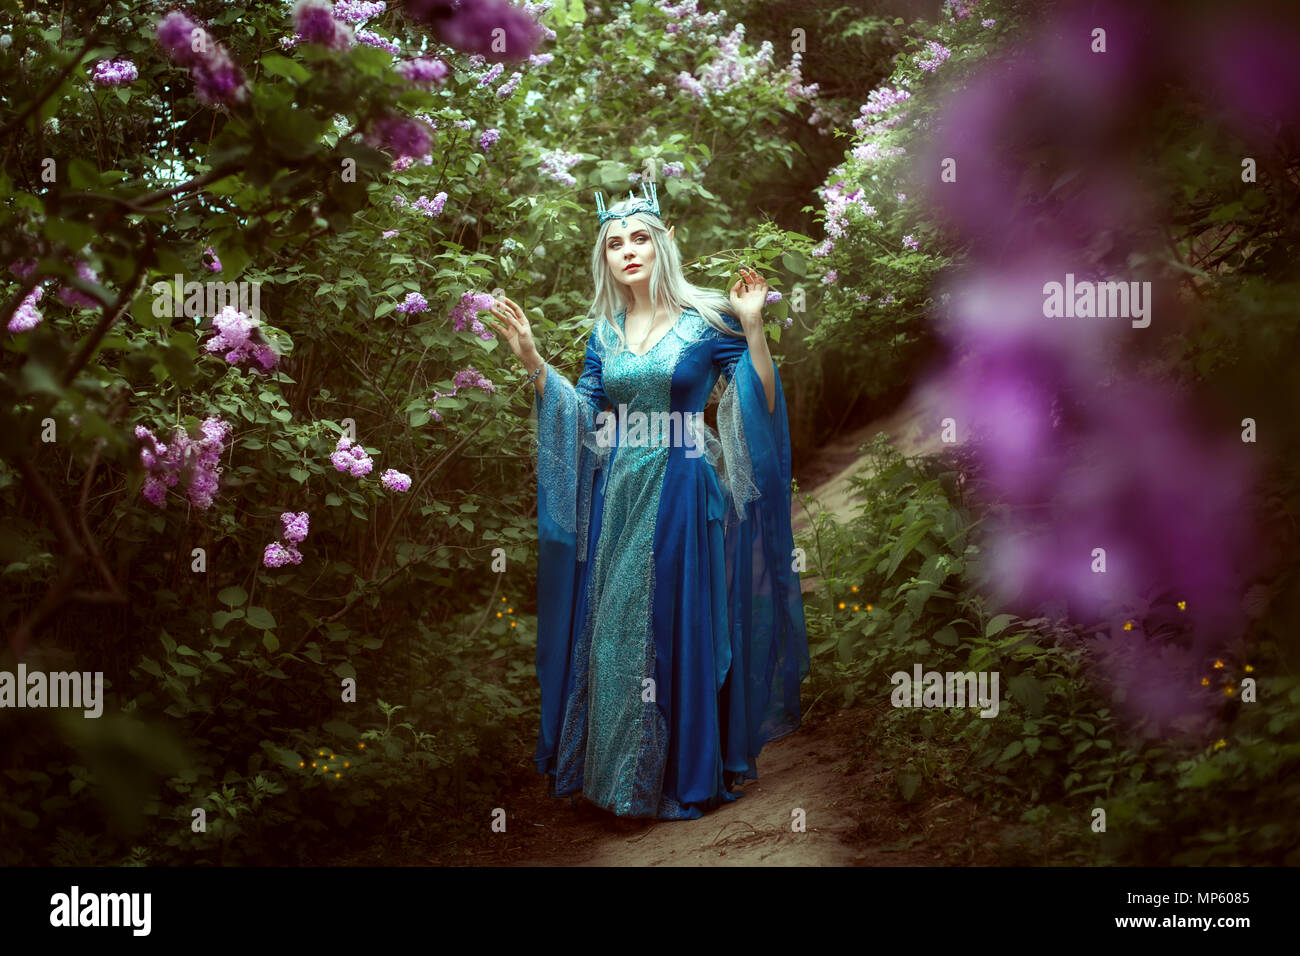 Belle femme elfe promenades dans une forêt féerique parmi les buissons de lilas. Banque D'Images